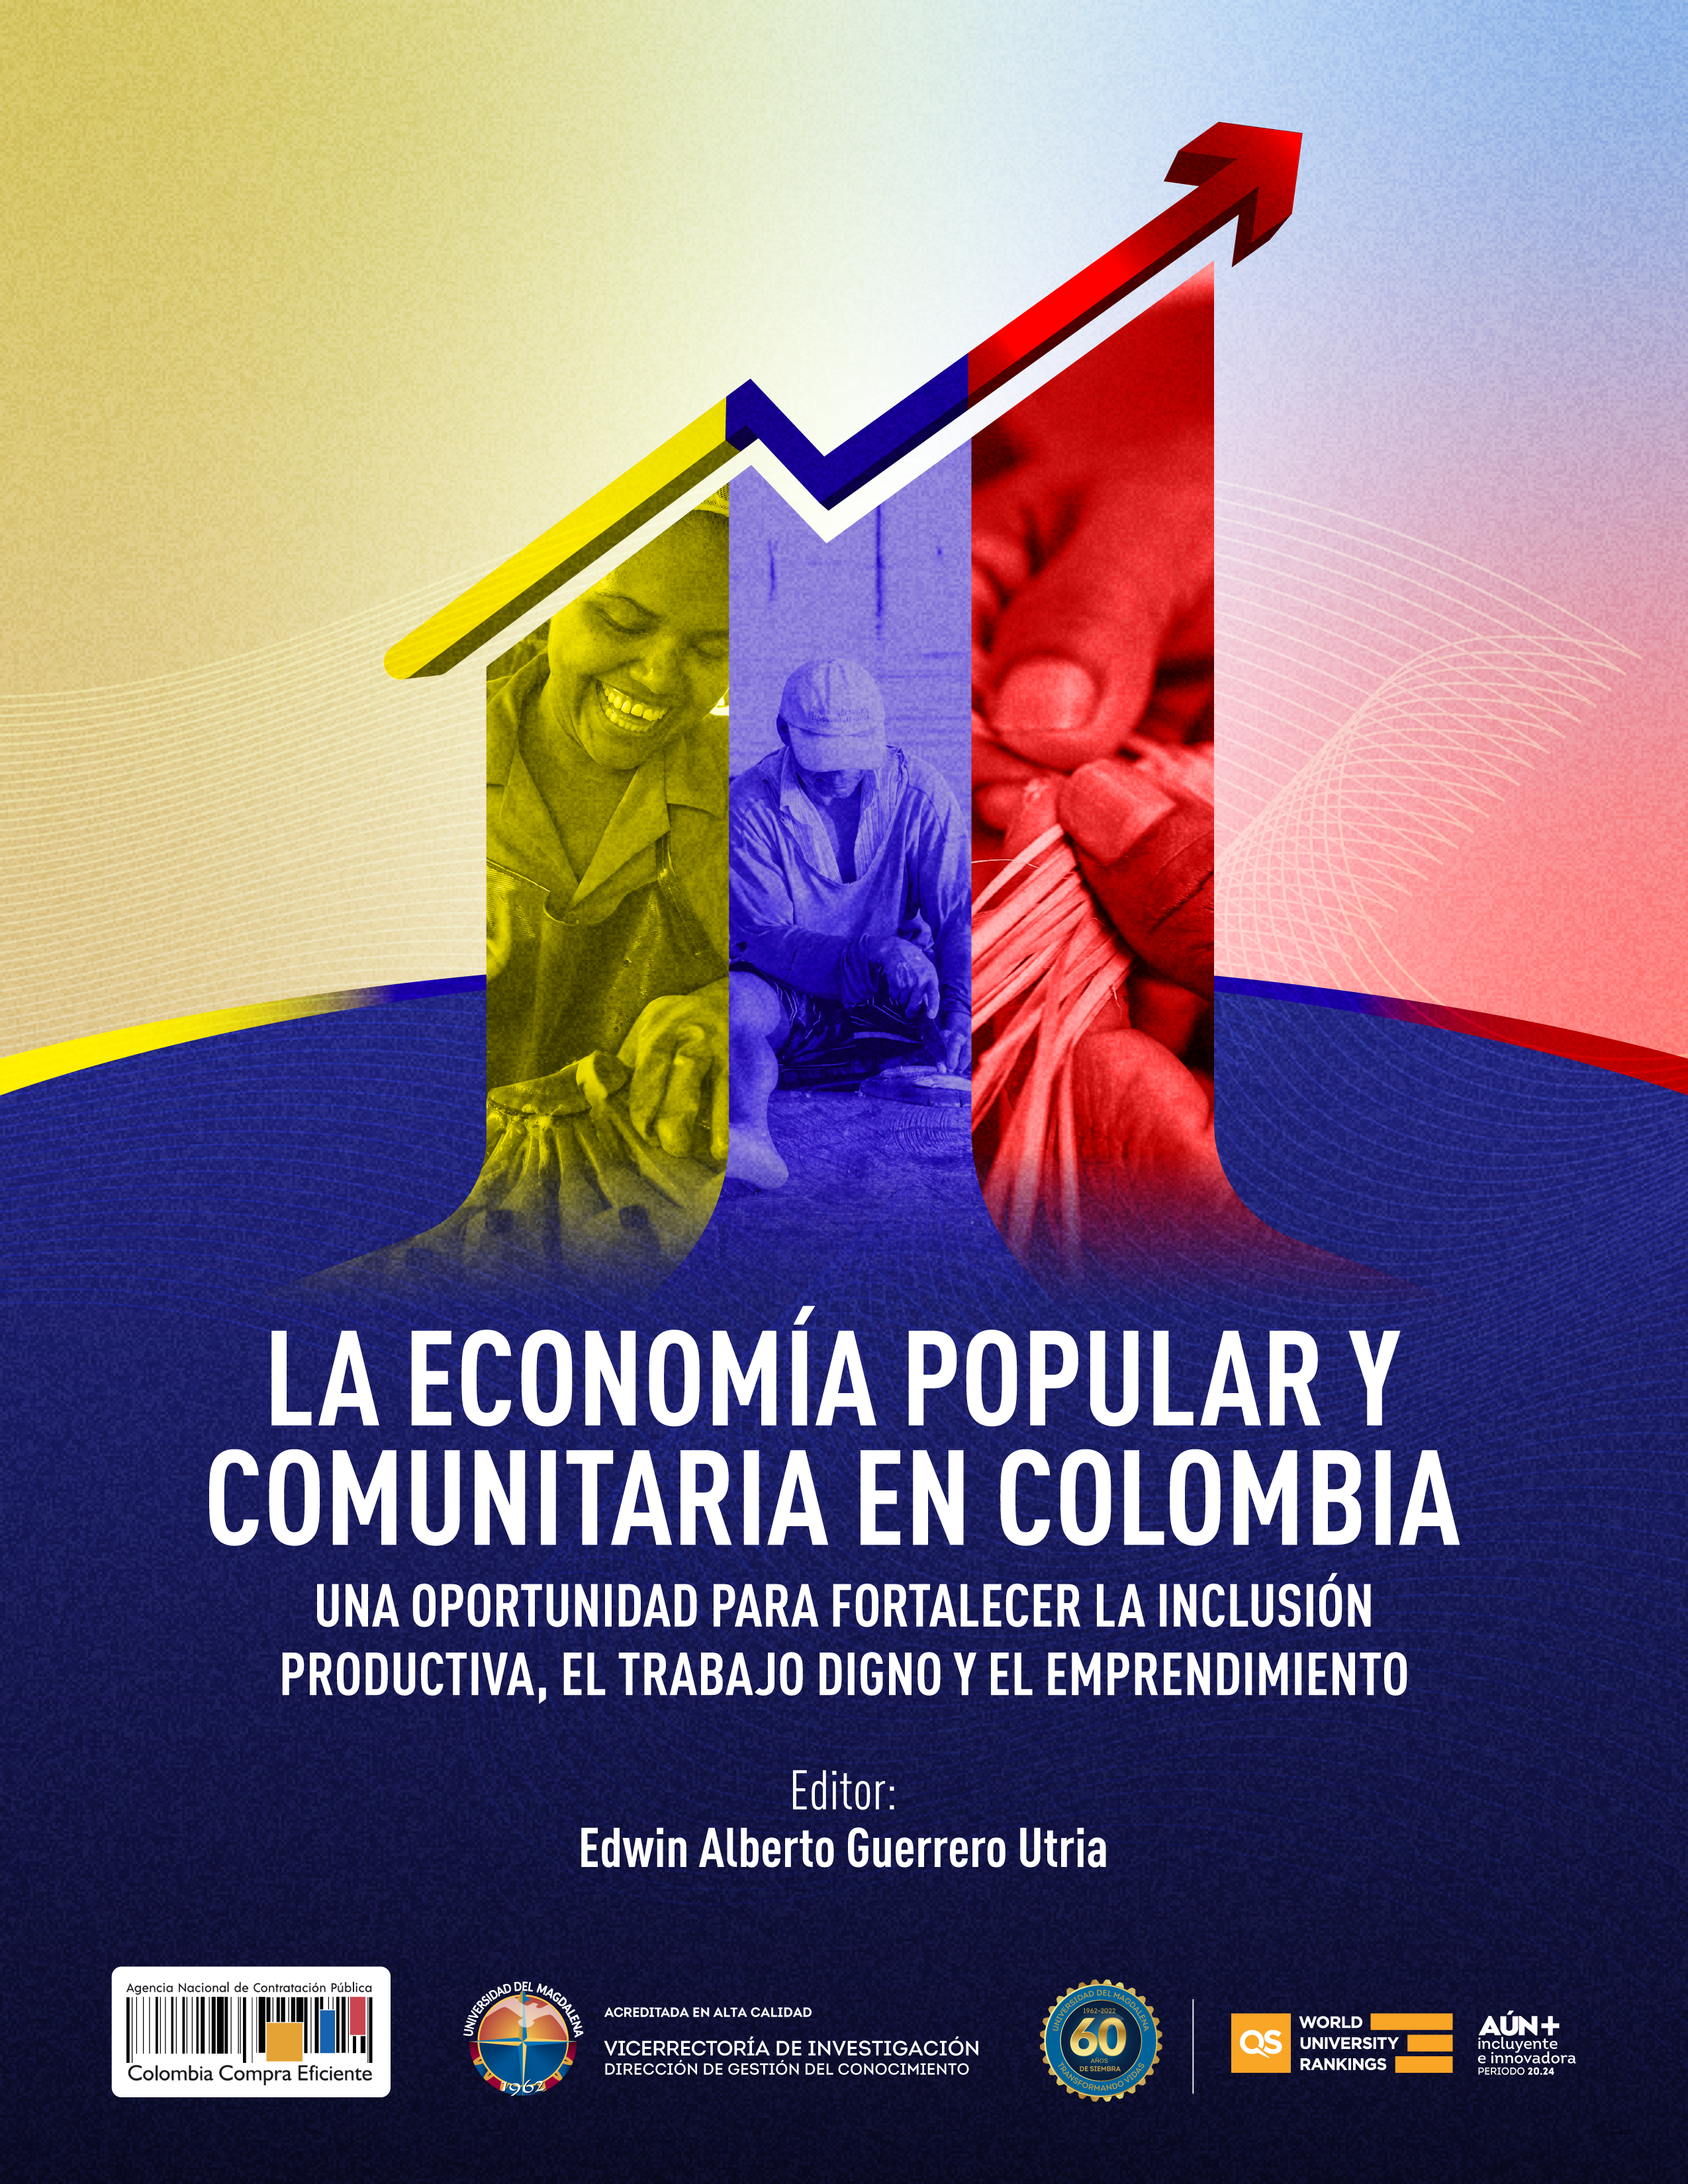 La economía popular y comunitaria en Colombia